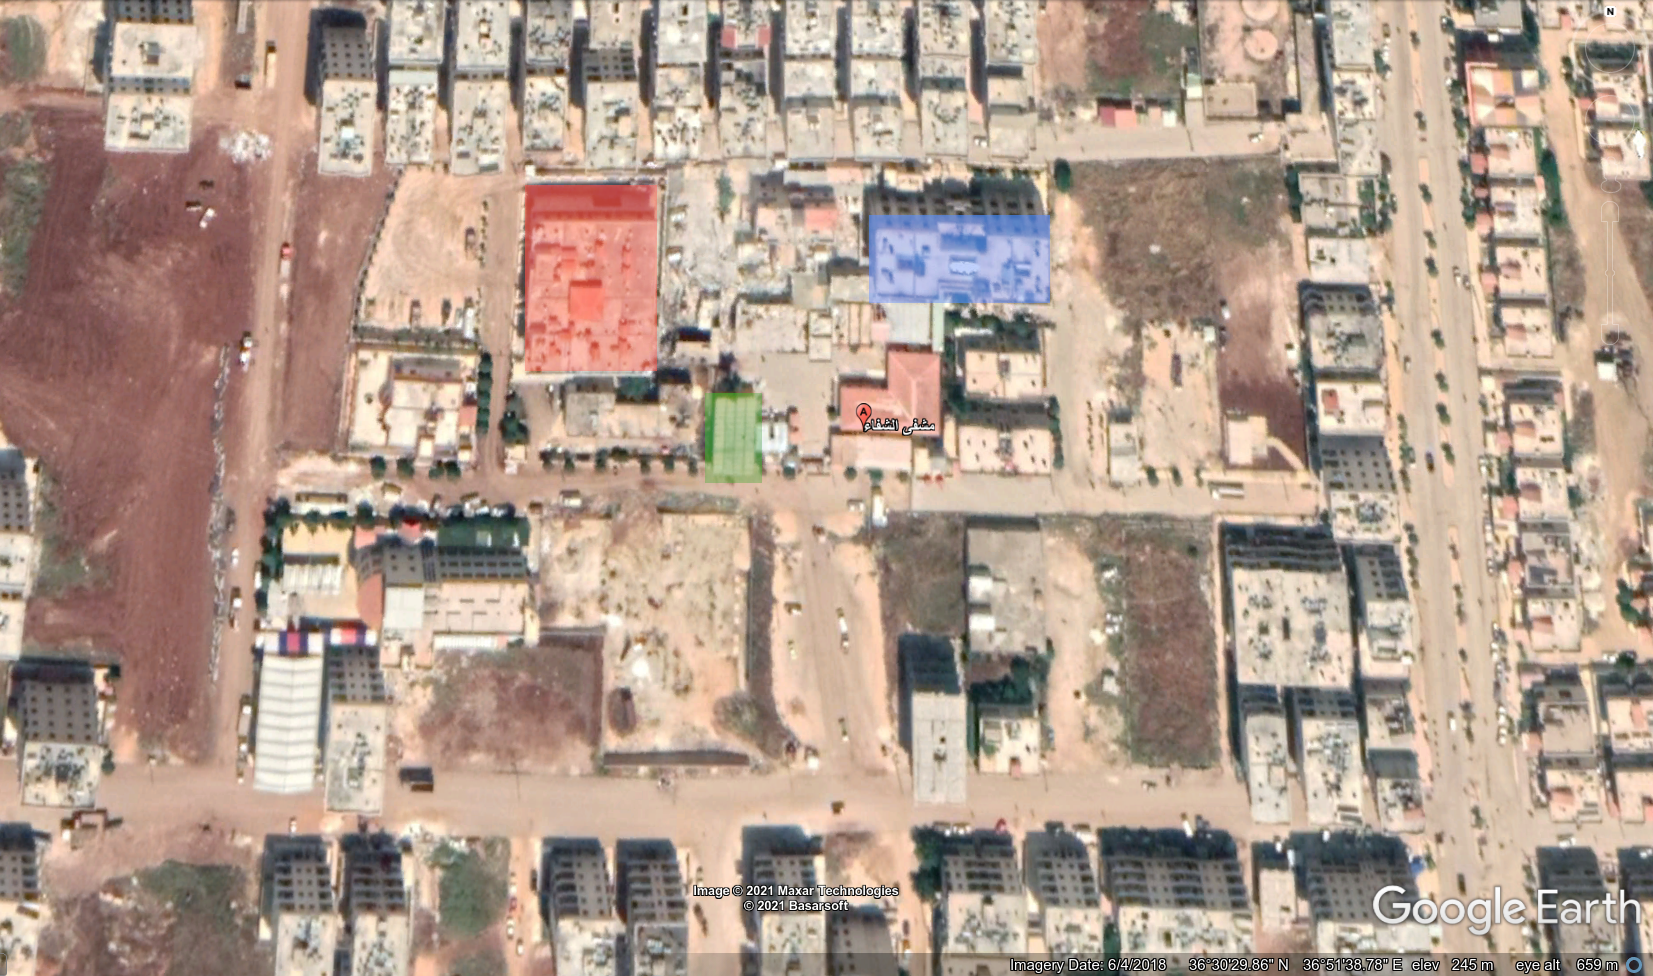 خريطة من غوغل إيرث تظهر مواقع الشرطة المدنية (بالأحمر) وفرع الأمن السياسي (بالأخضر) ومحكمة عفرين (بالأزرق) بالقرب من مشفى الشفاء المحدّد بالعلامة الحمراء